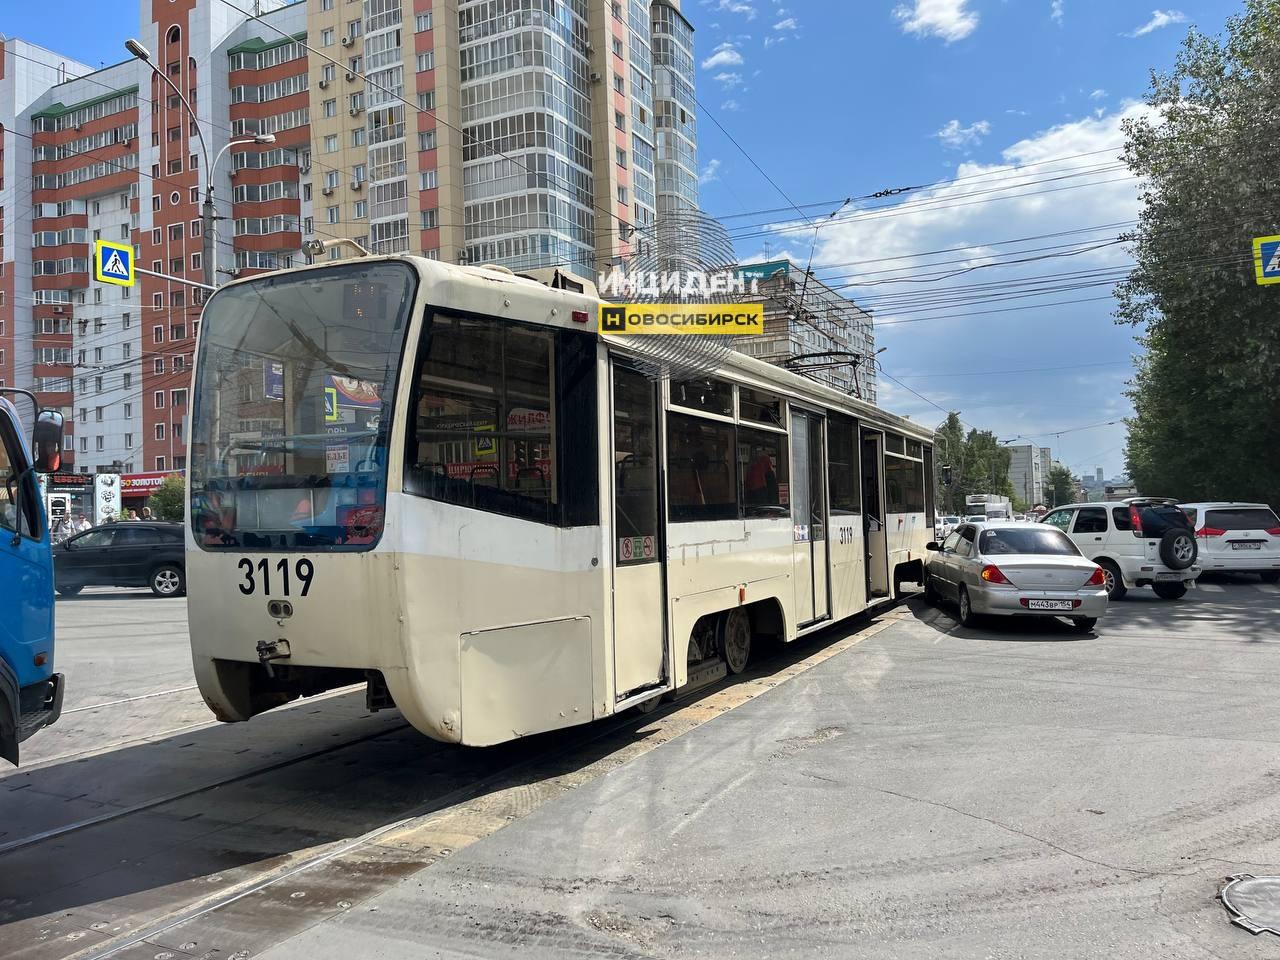 Фото В Октябрьском районе Новосибирска столкнулись иномарка и трамвай №13 2